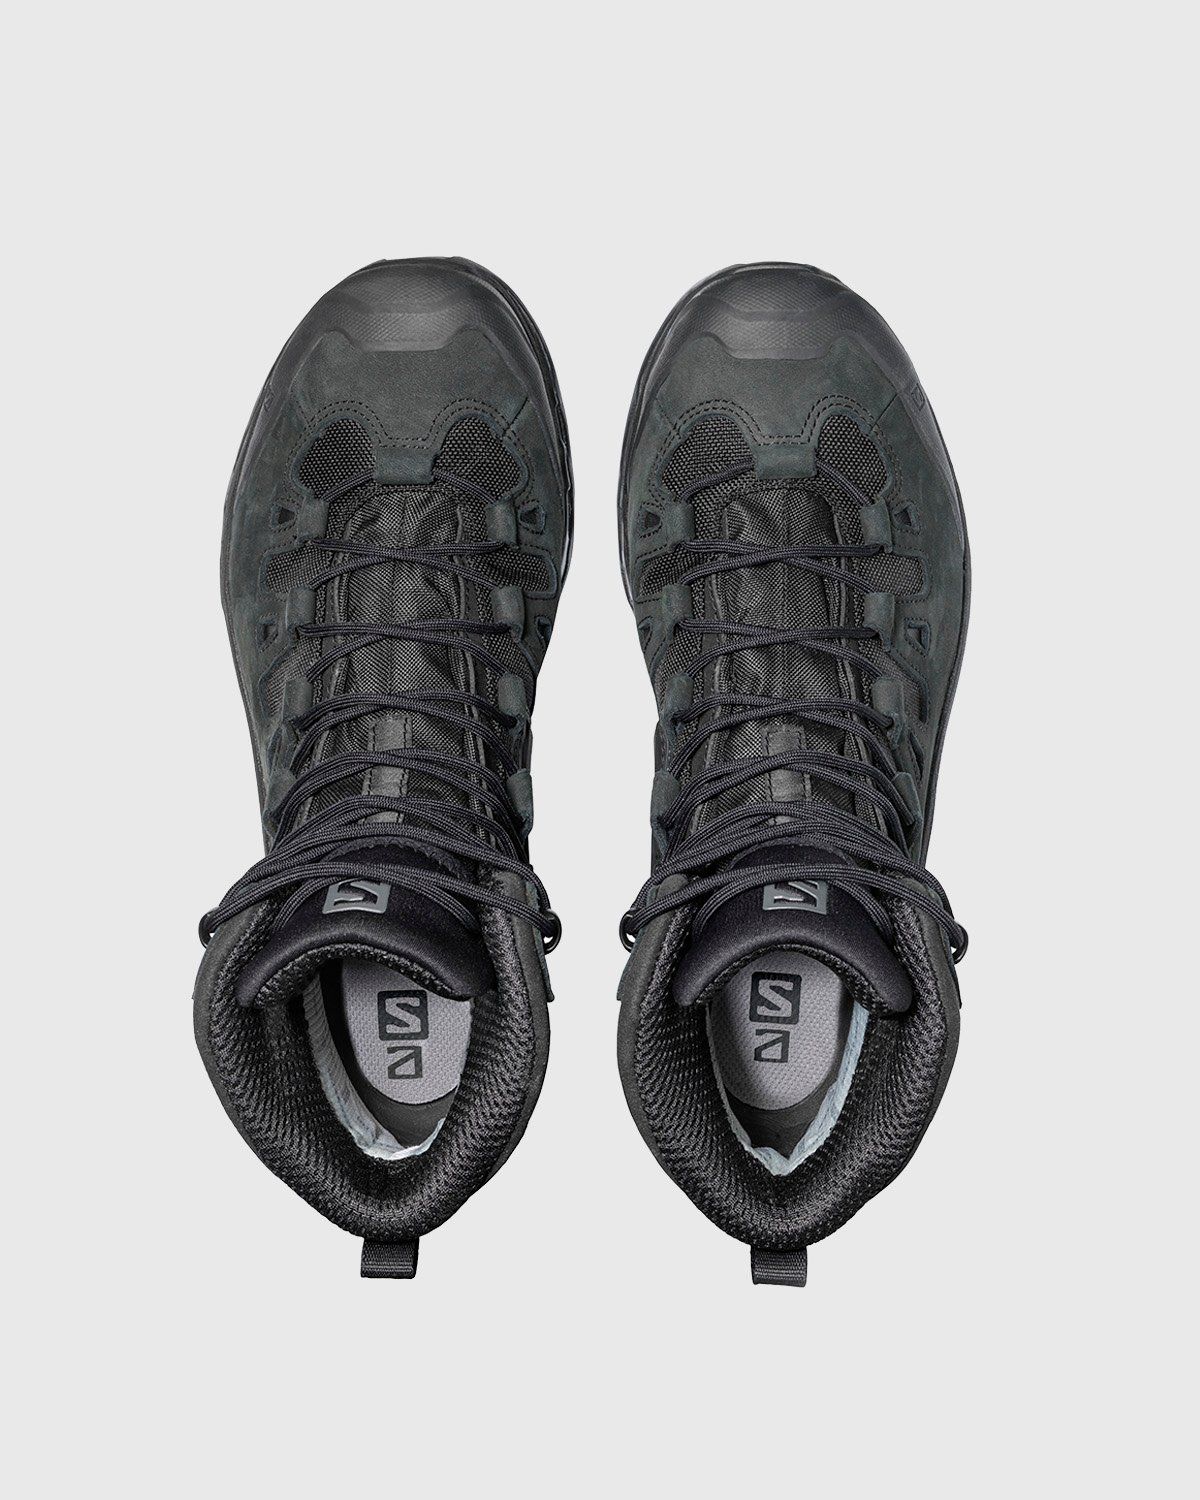 Salomon – Quest 4D GTX Advanced Black - Hiking Boots - Black - Image 3